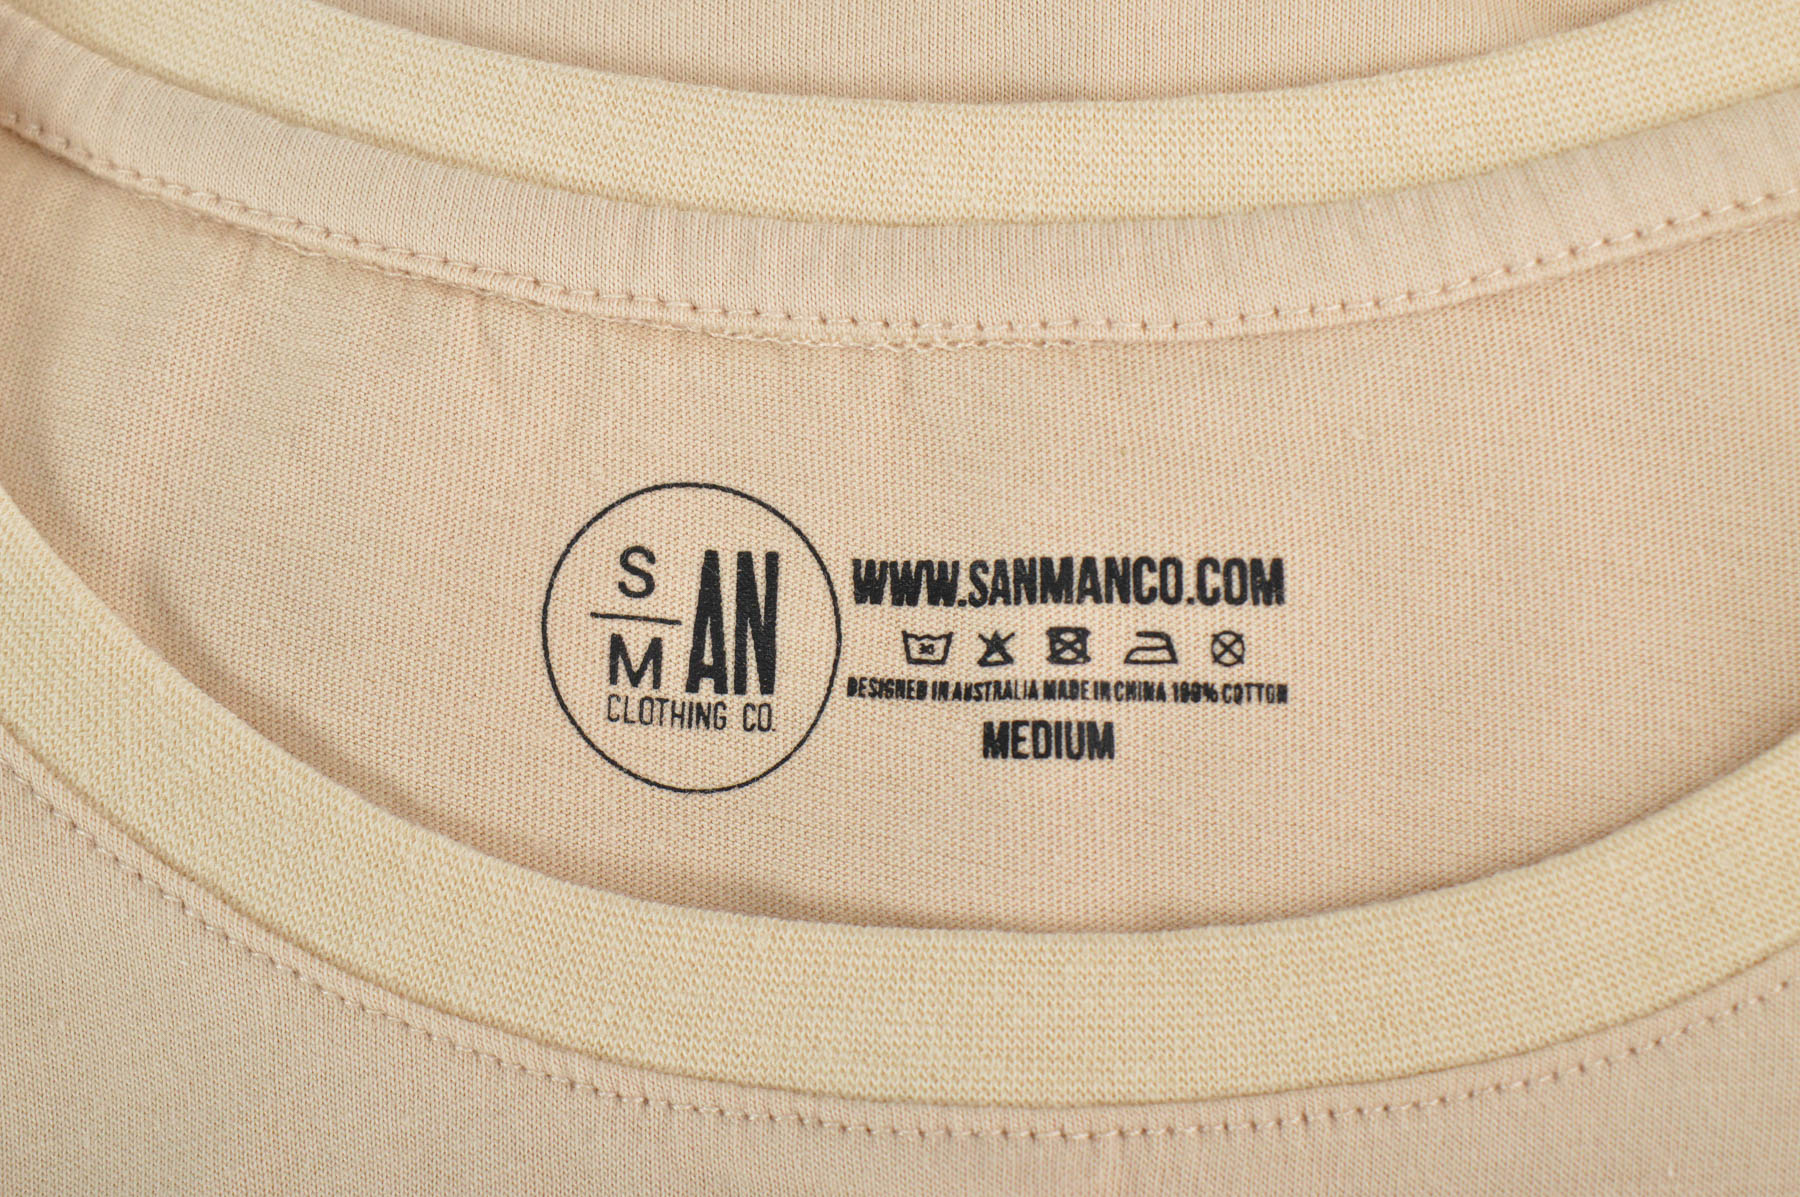 Men's top - Sanman Clothing Co. - 2